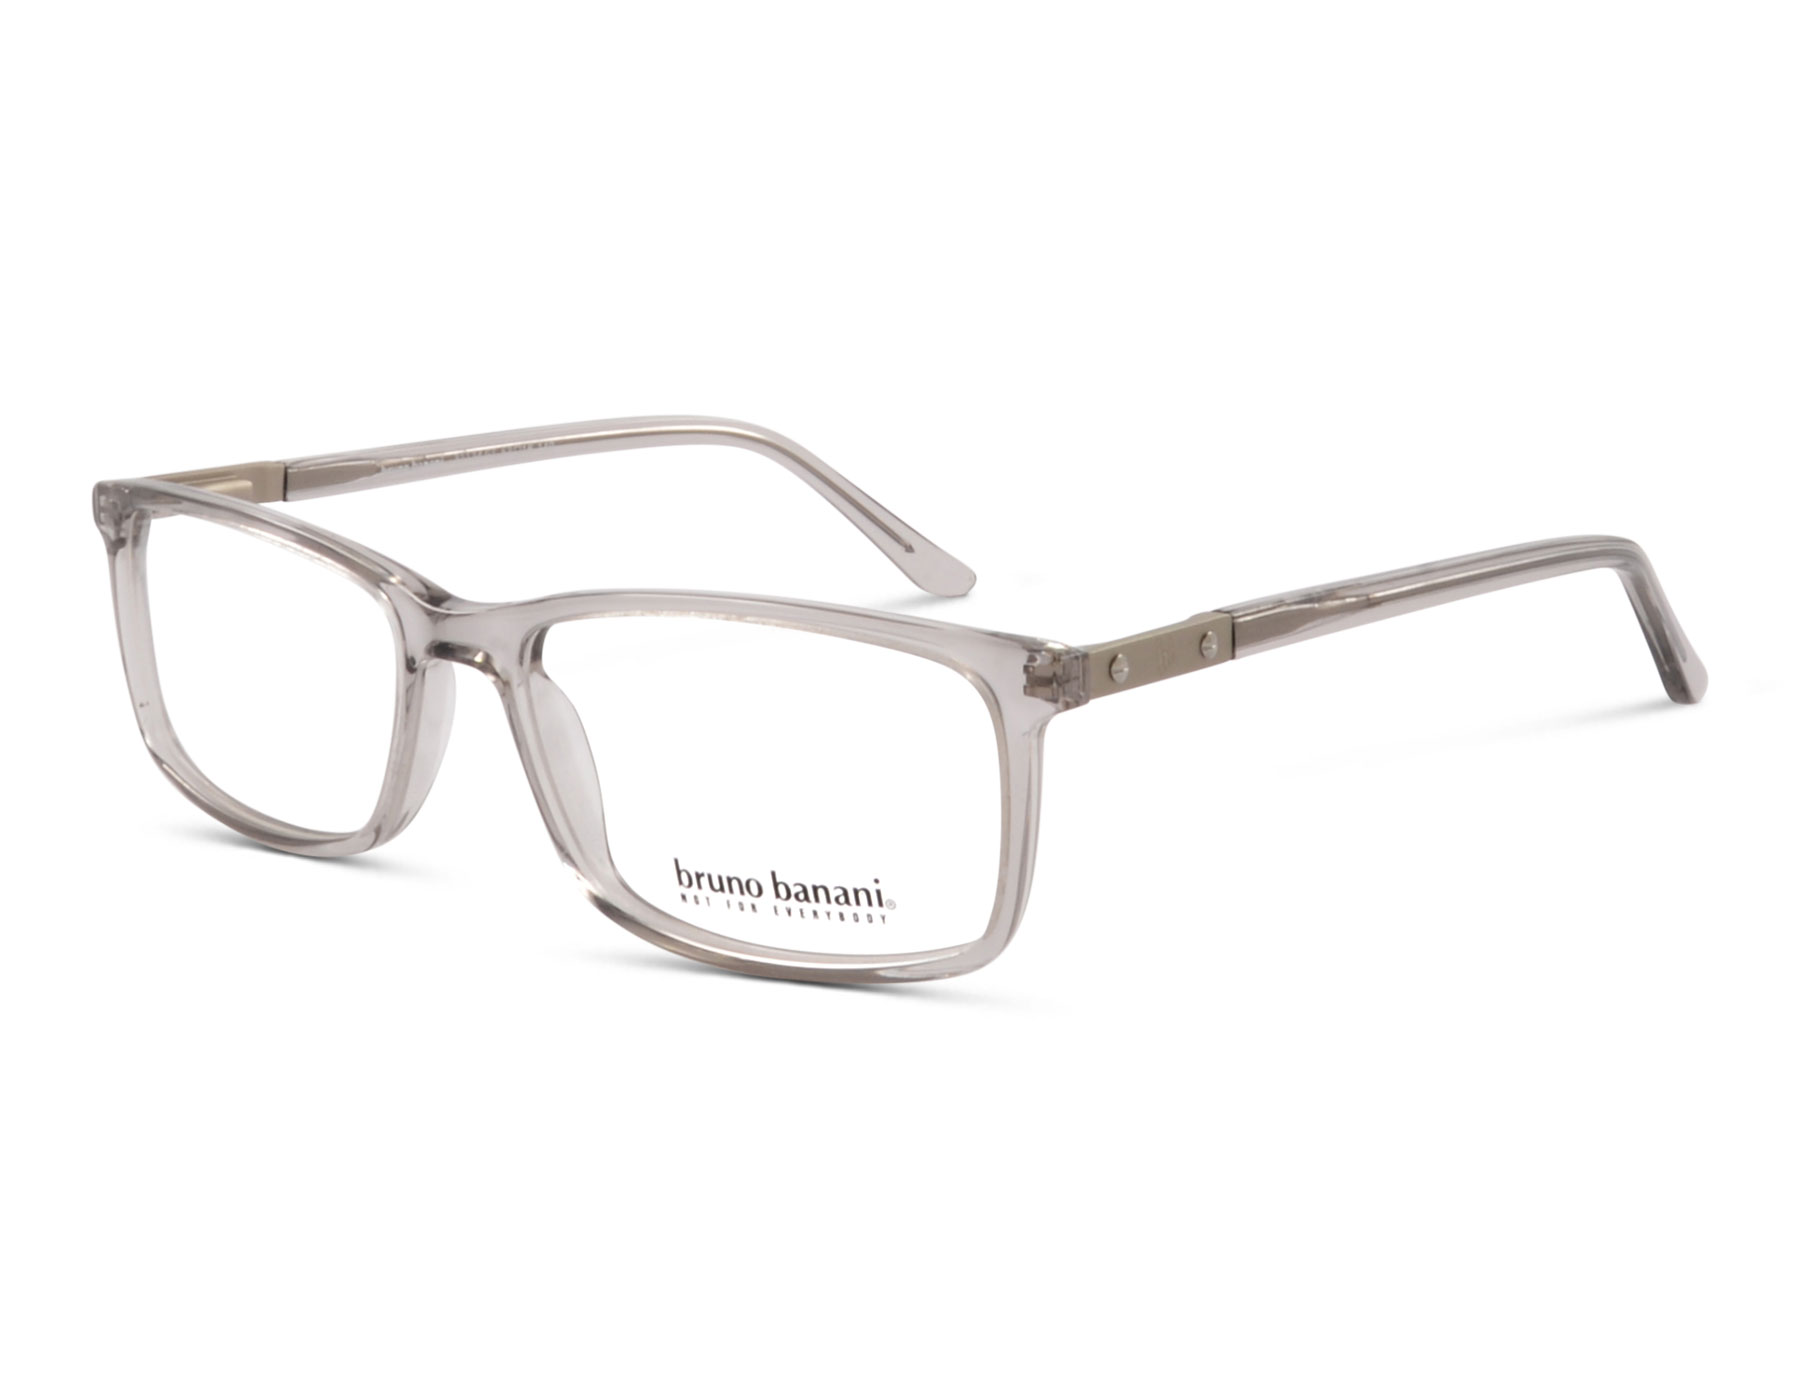 Bruno Banani - Online-Optiker online Brille dein 53: kaufen Kaulard Brille GT - 31134